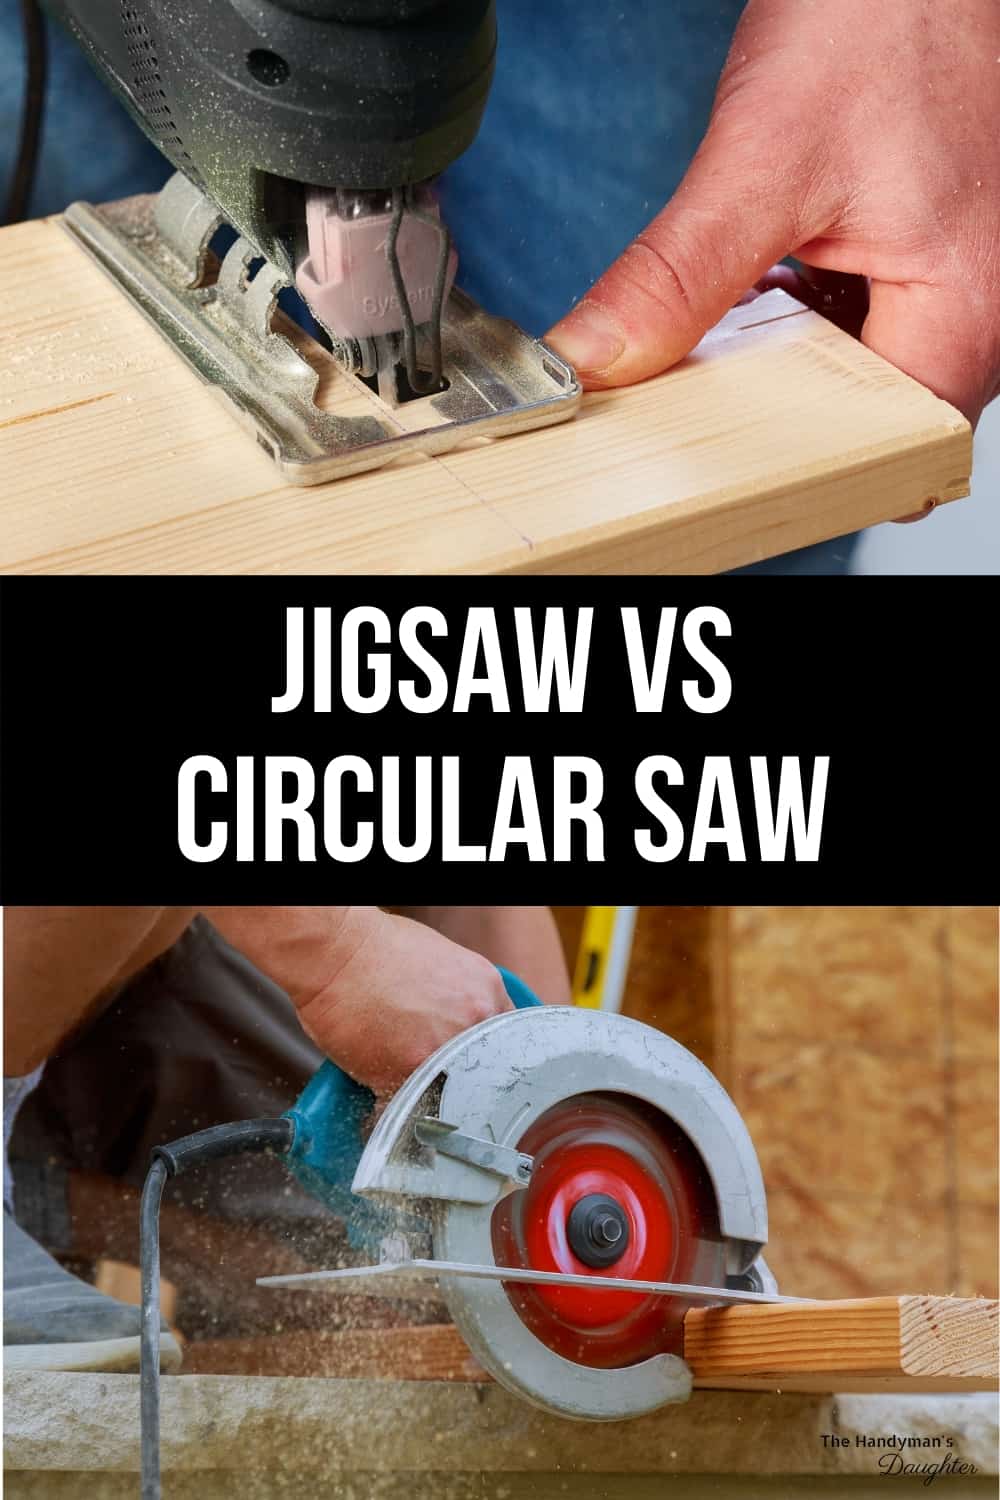 Jigsaw vs circular saw